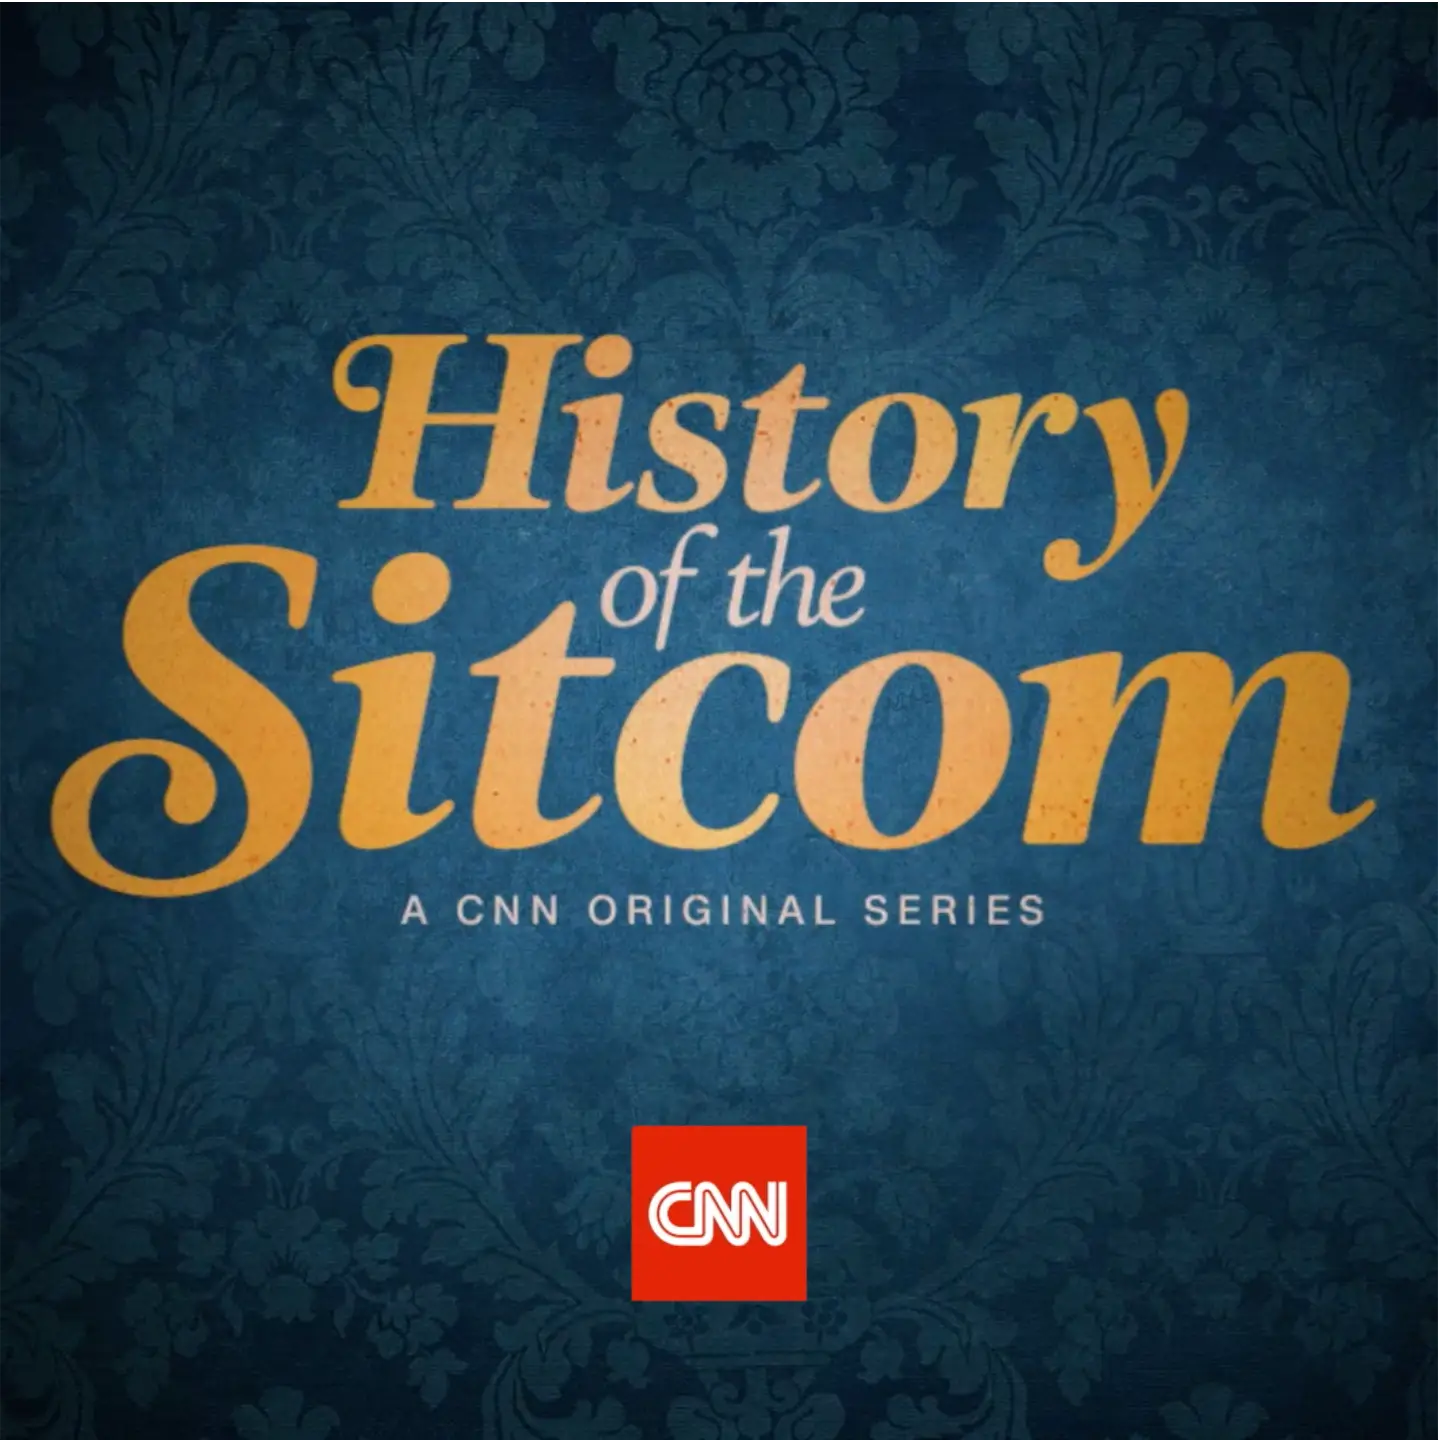 History of social media: a CNN original series.